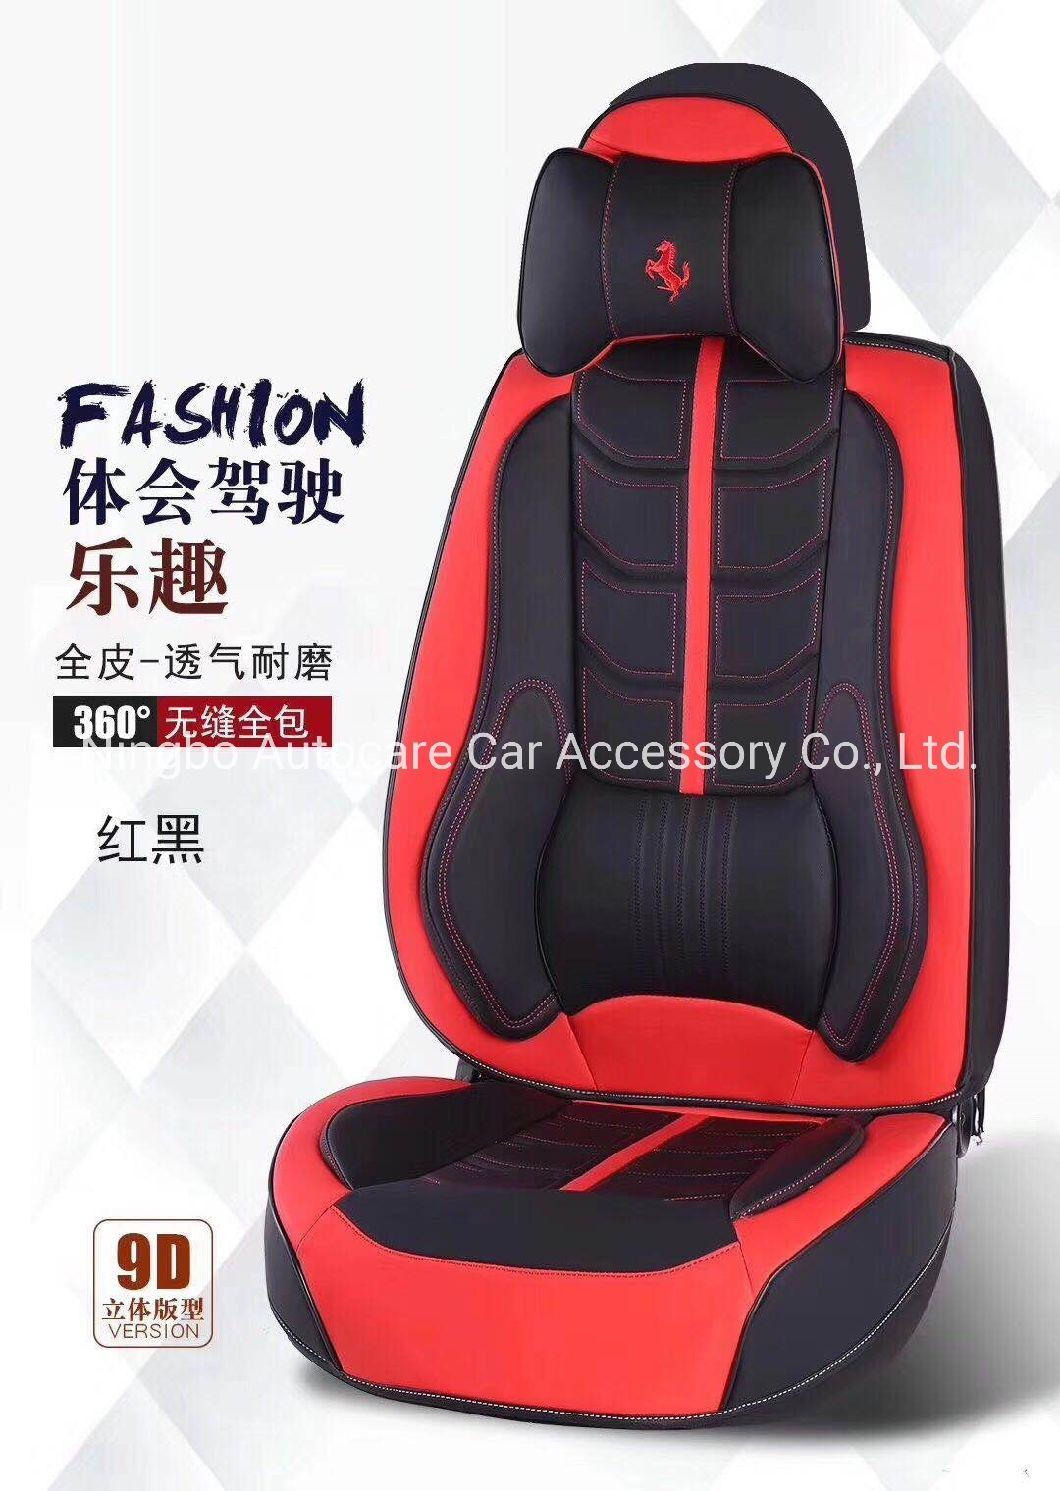 9d Car Seat Cushion